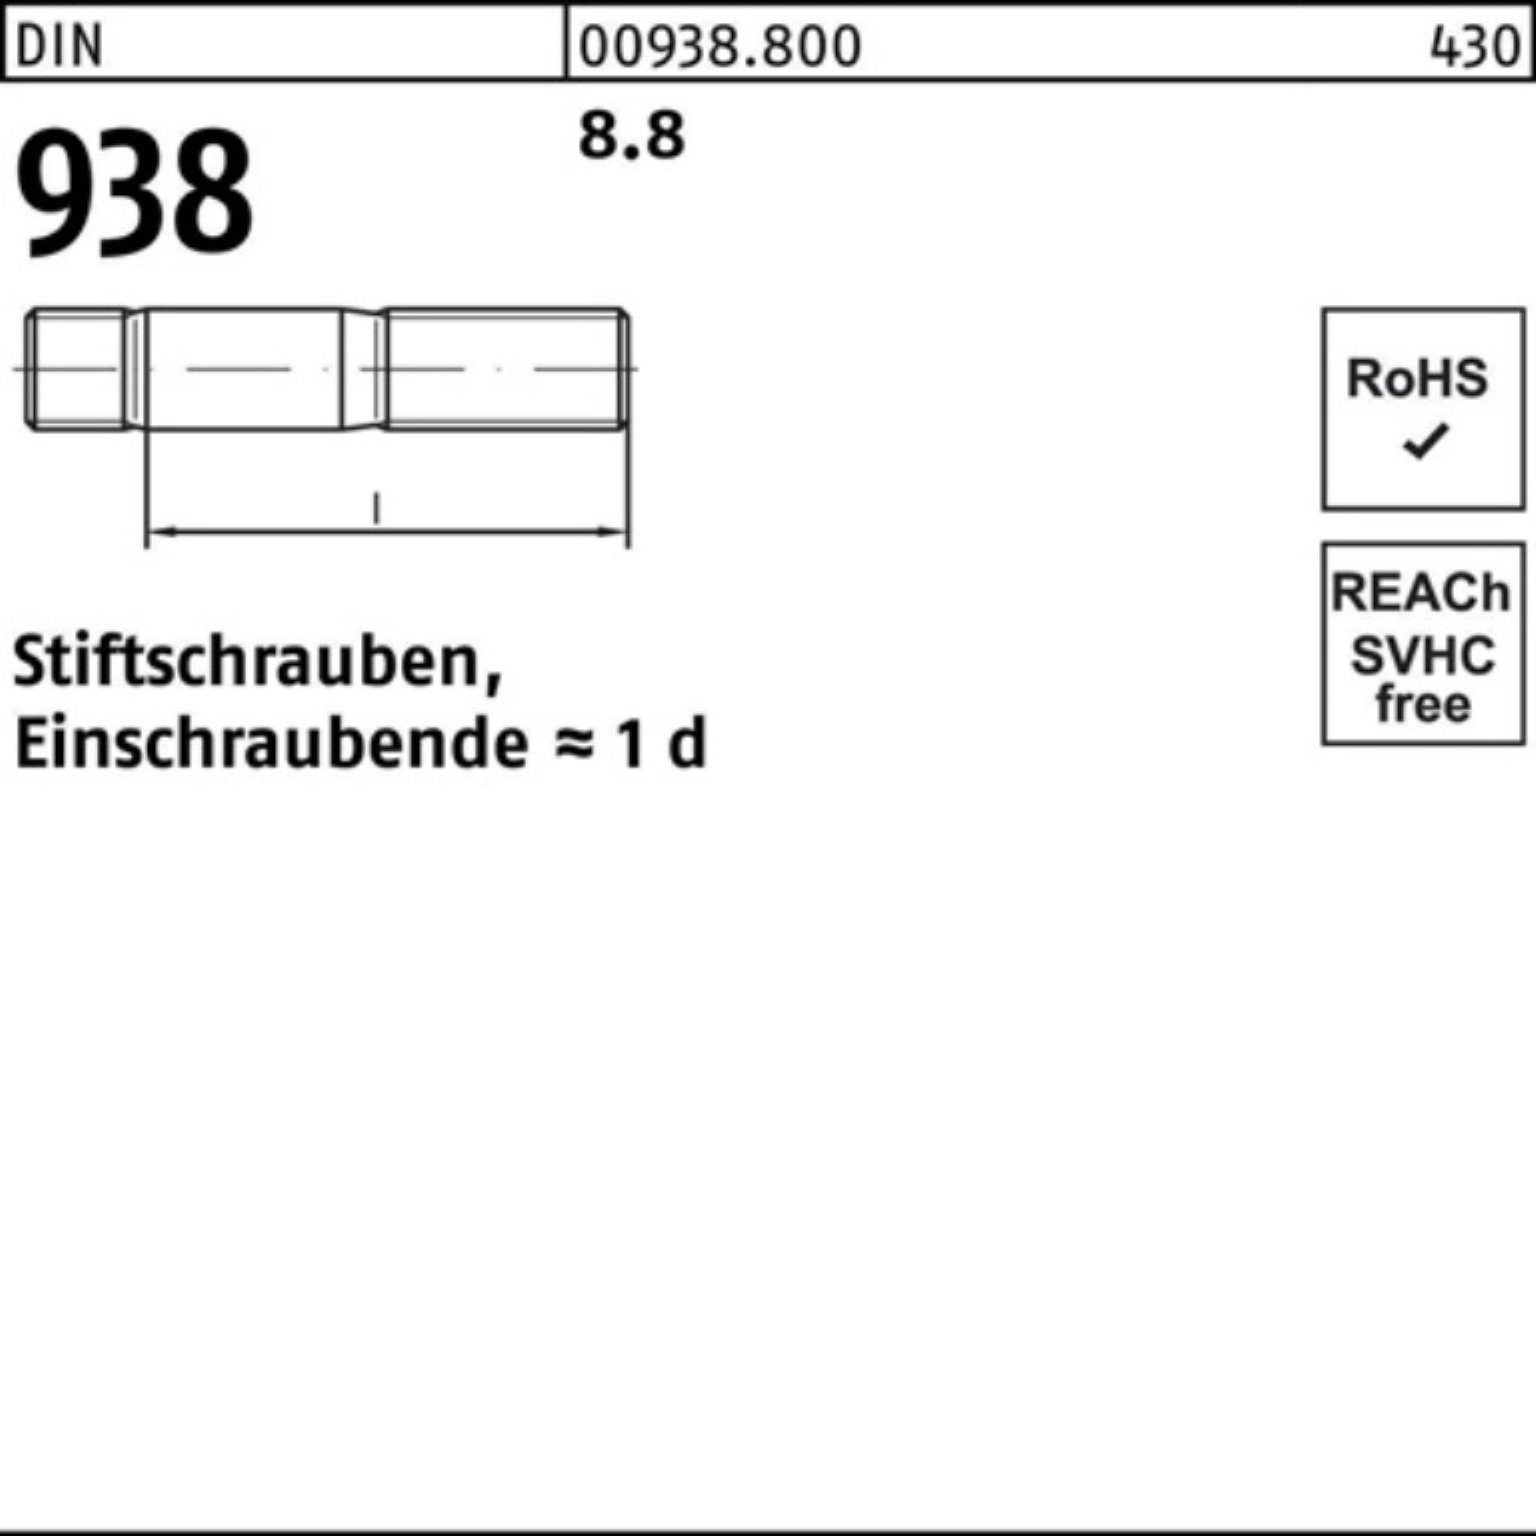 10 Sti M16x 938 Stiftschraube DIN 8.8 DIN 80 100er Stück 8.8 Stiftschraube Pack Reyher 938